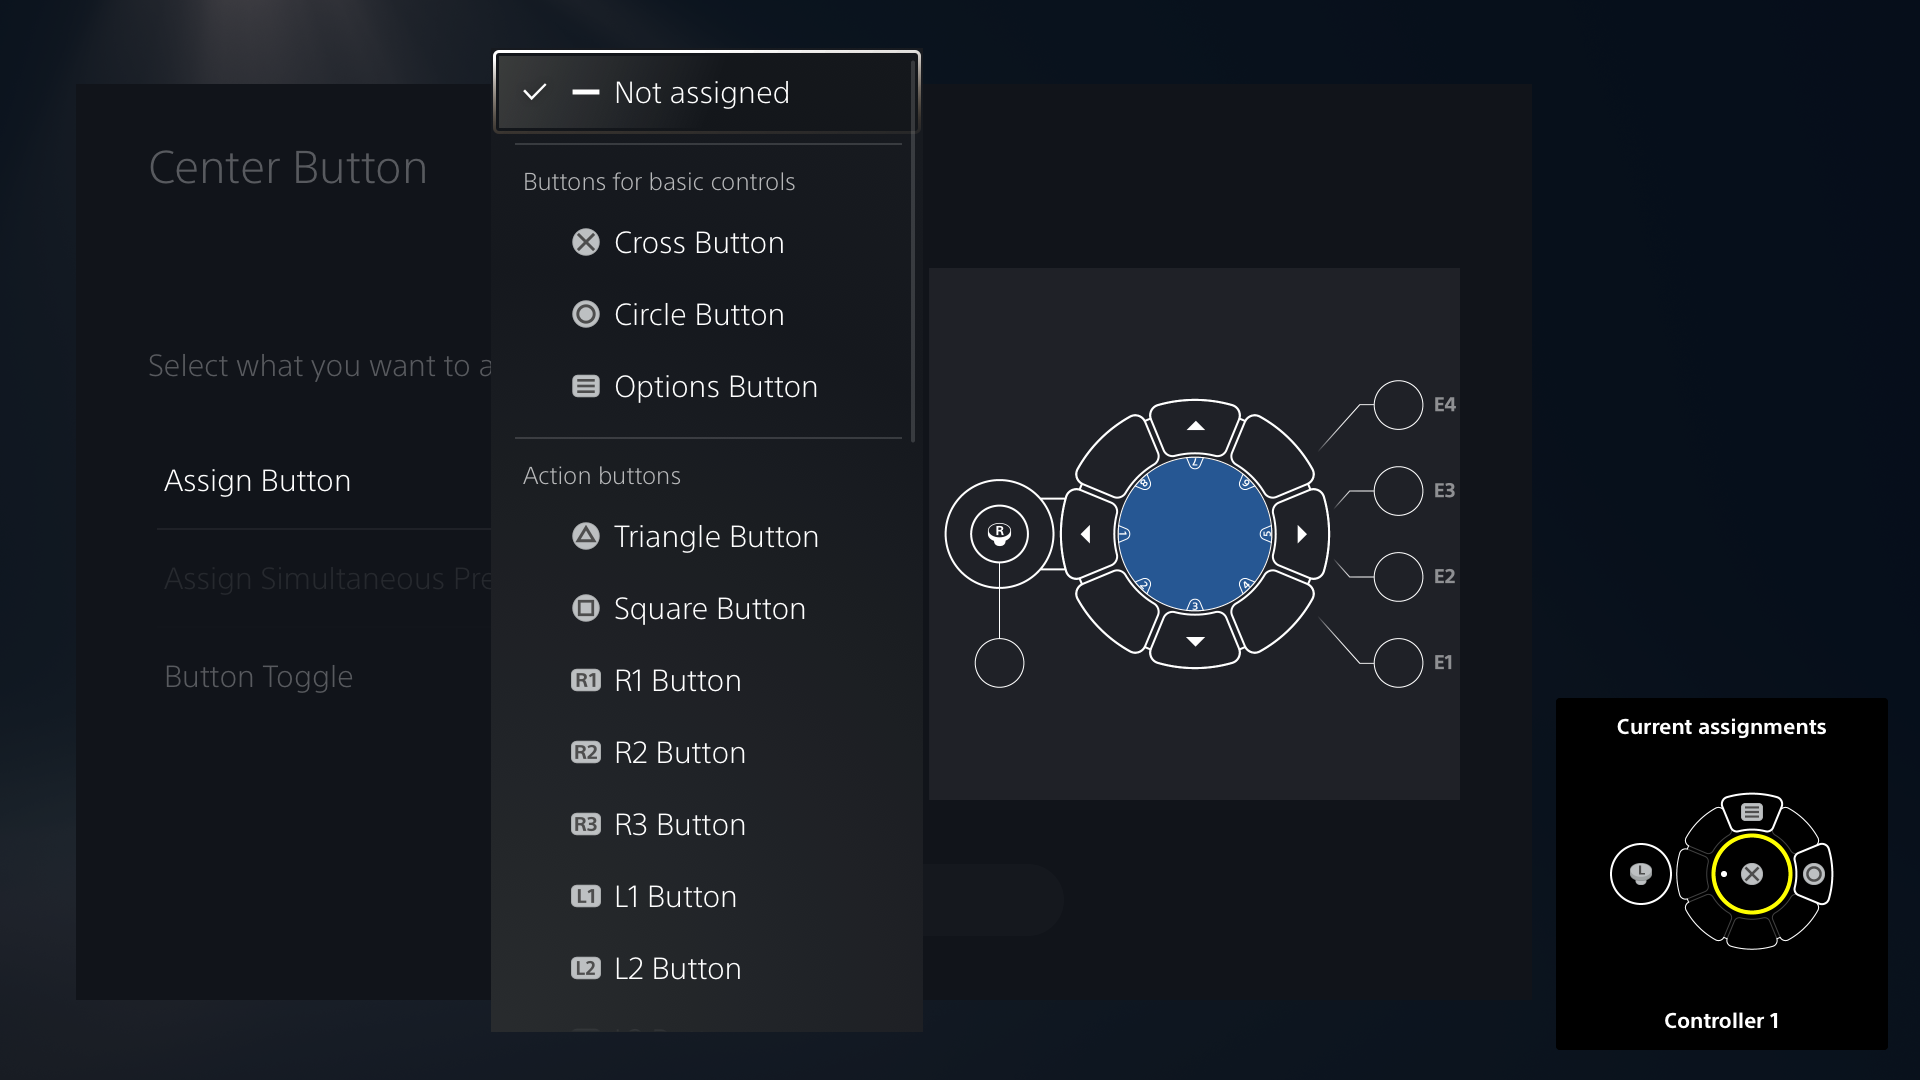  "Image de l'interface utilisateur de la manette Access présentant différents choix d'attribution des touches"